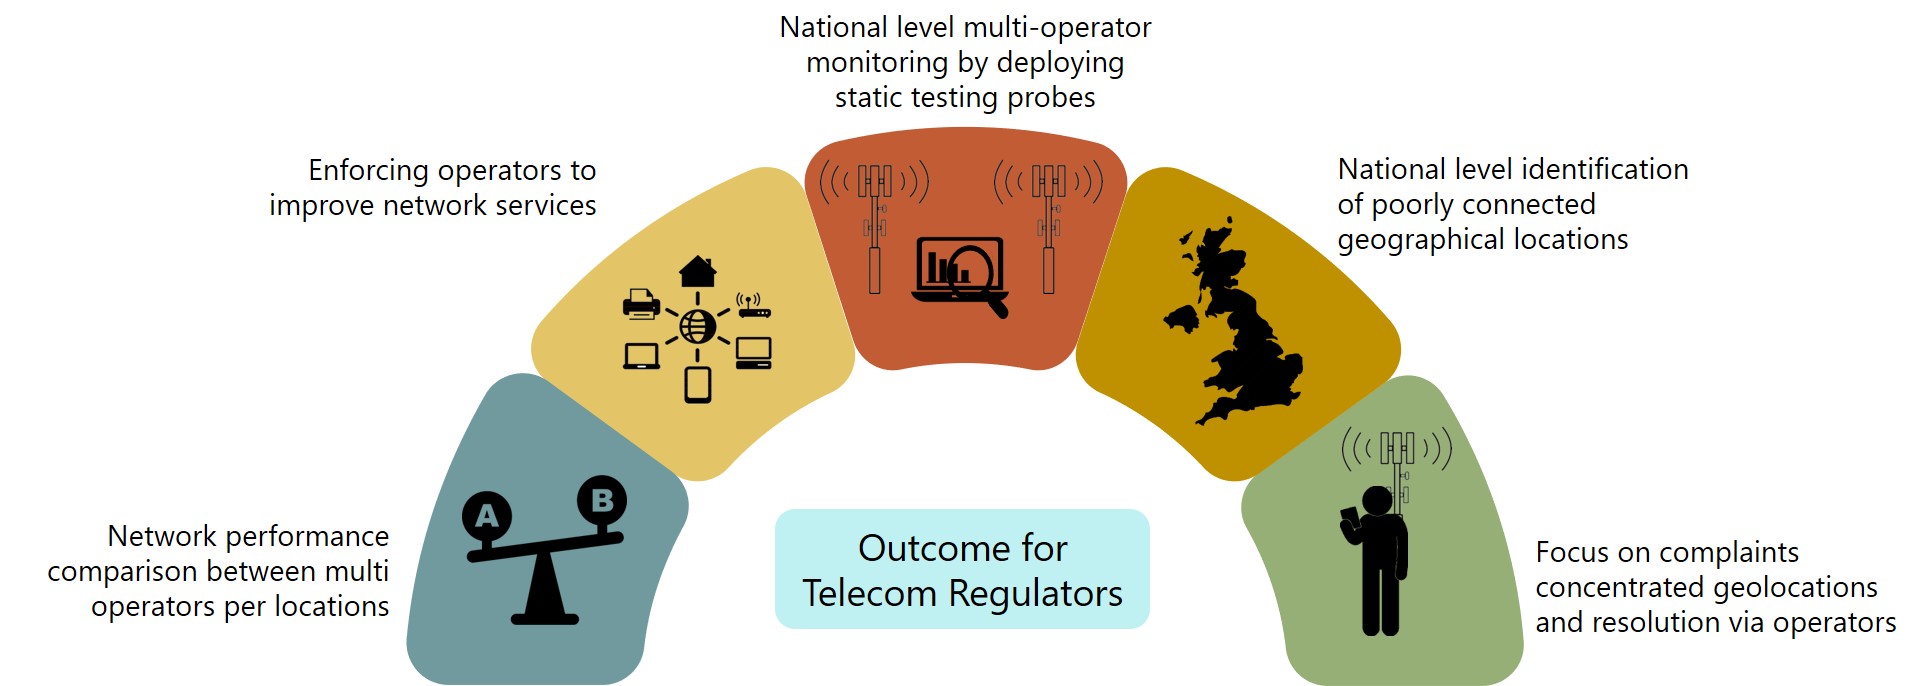 outcome_for_telecom_regulators